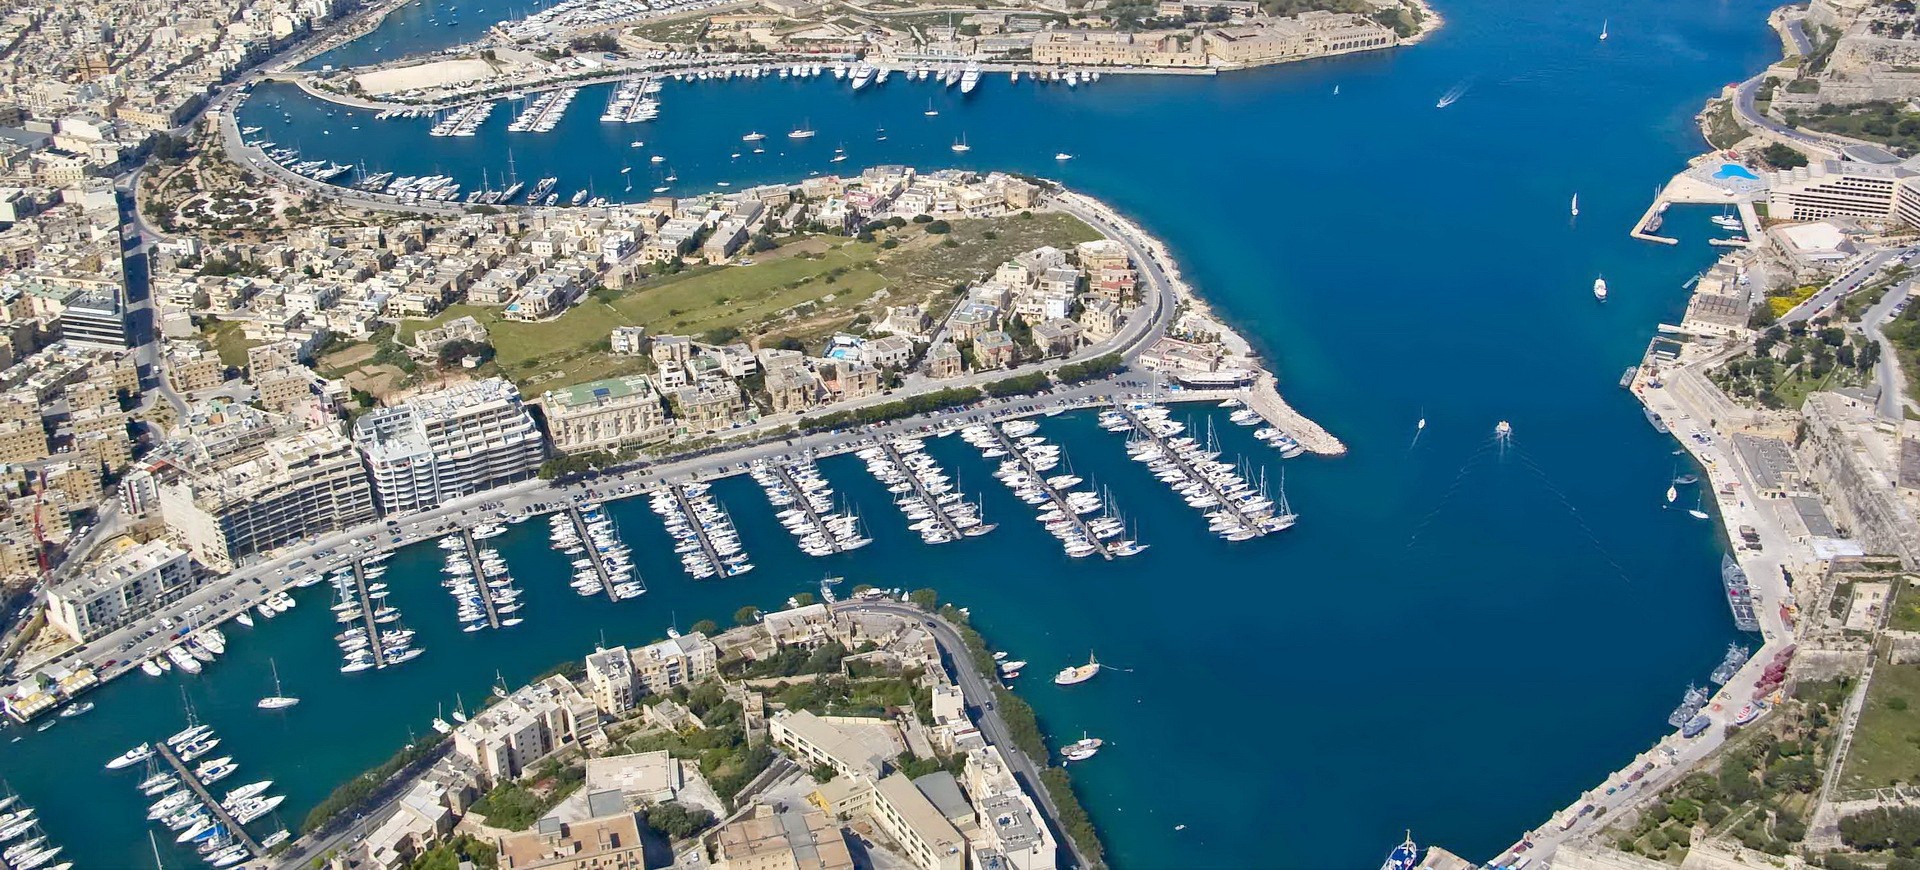 Paroisse Saint Dominique à Malte